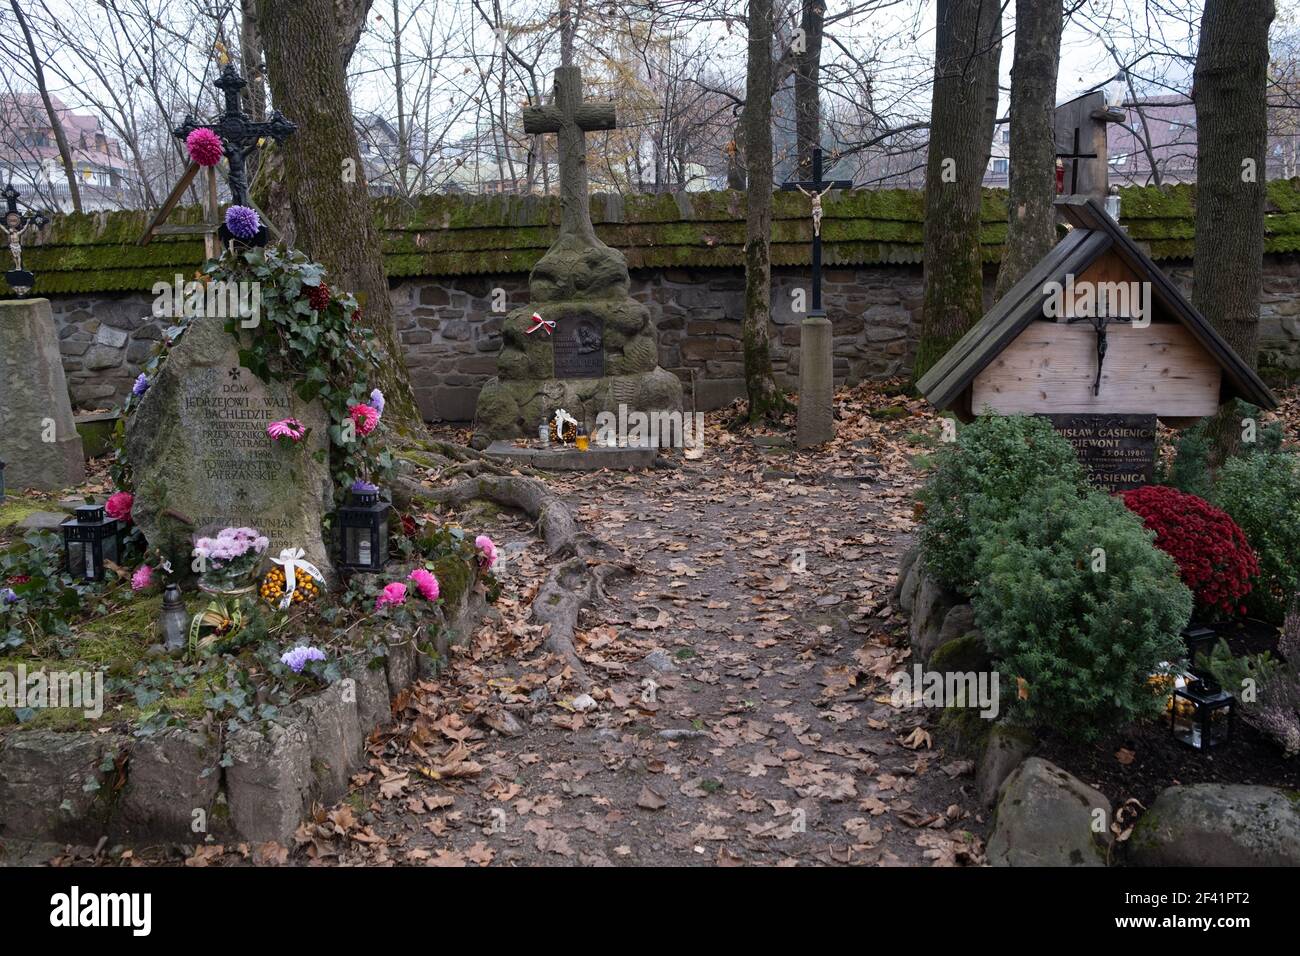 Polen, Zakopane - 13. November 2020: Der Verdienstfriedhof in Peksowy Brzyzek in Zakopane Stockfoto